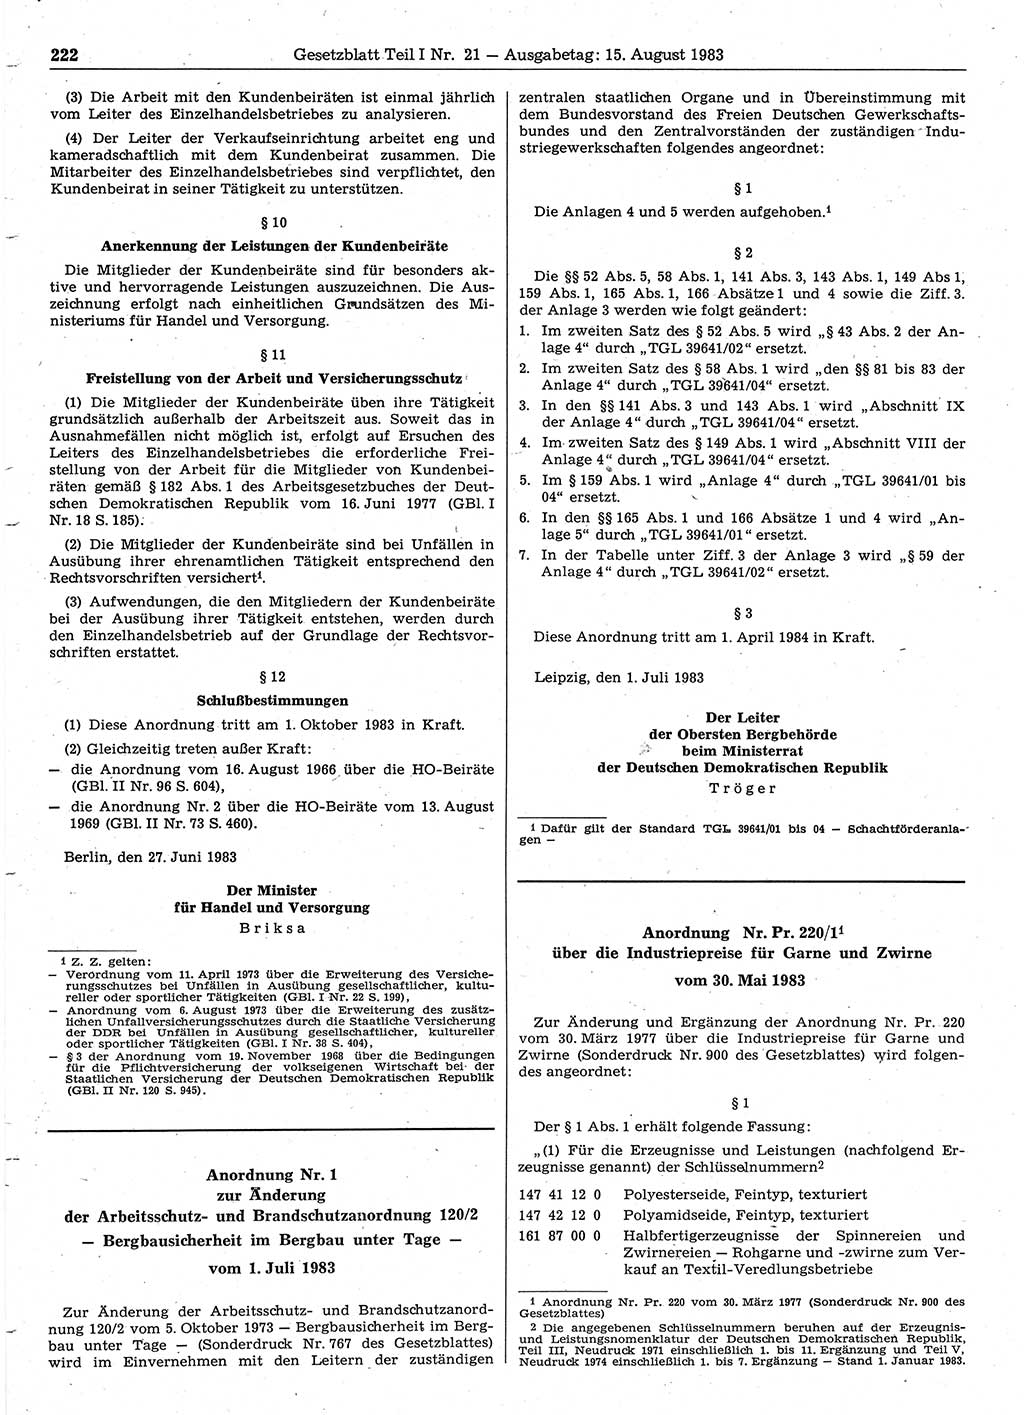 Gesetzblatt (GBl.) der Deutschen Demokratischen Republik (DDR) Teil Ⅰ 1983, Seite 222 (GBl. DDR Ⅰ 1983, S. 222)